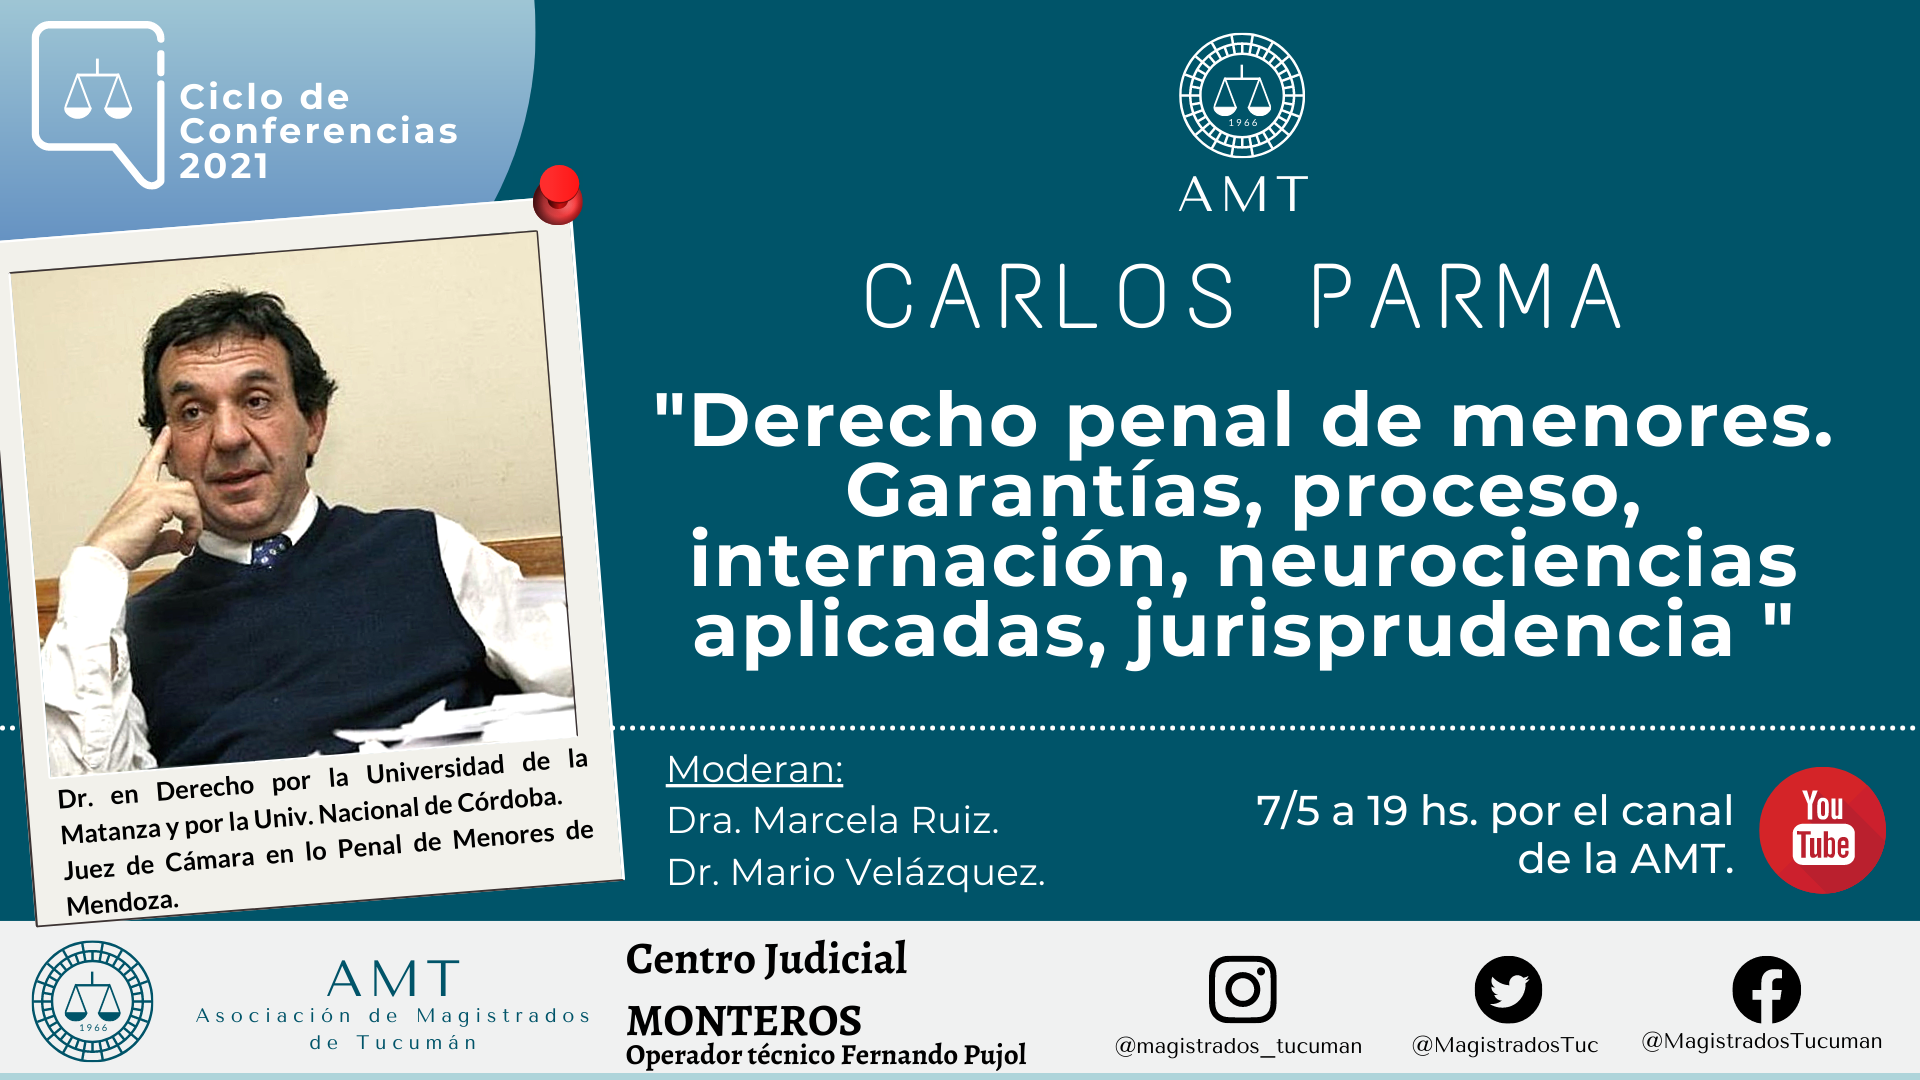 Vuelva a ver la conferencia de Carlos Parma «Derecho penal de menores»